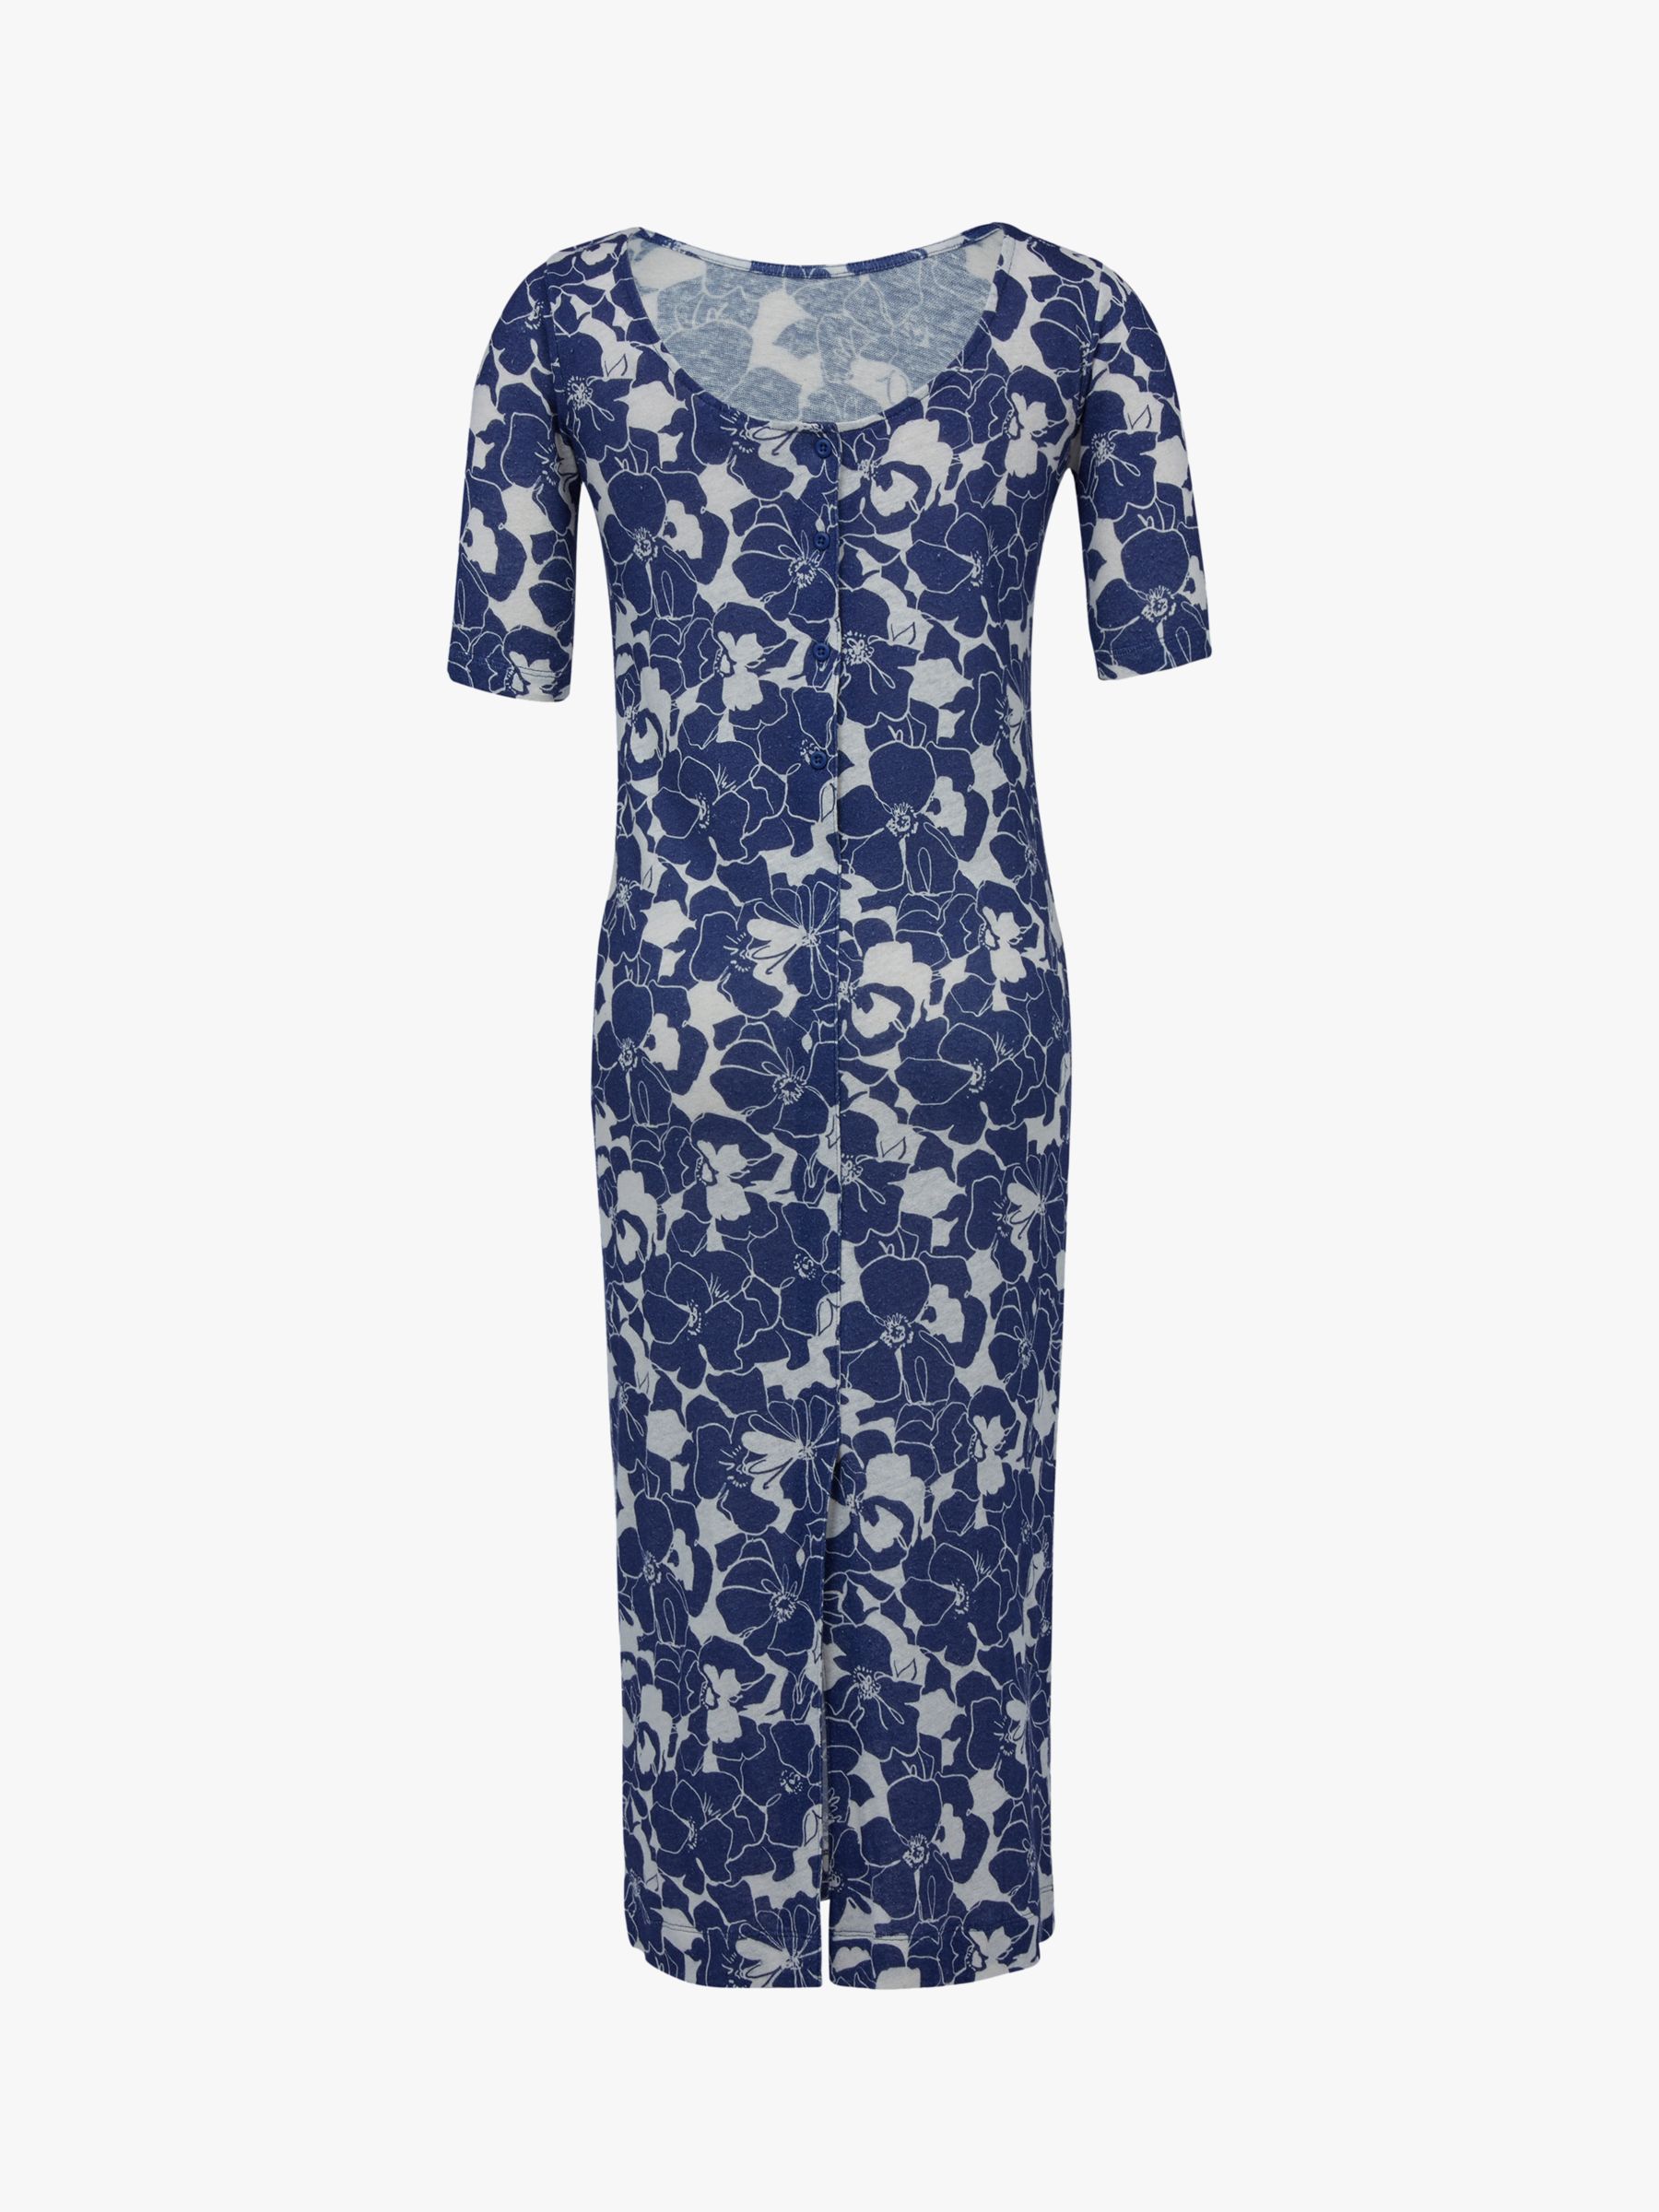 Celtic & Co. Organic Cotton Blend Button Back Dress, Blue Linear Floral, 18